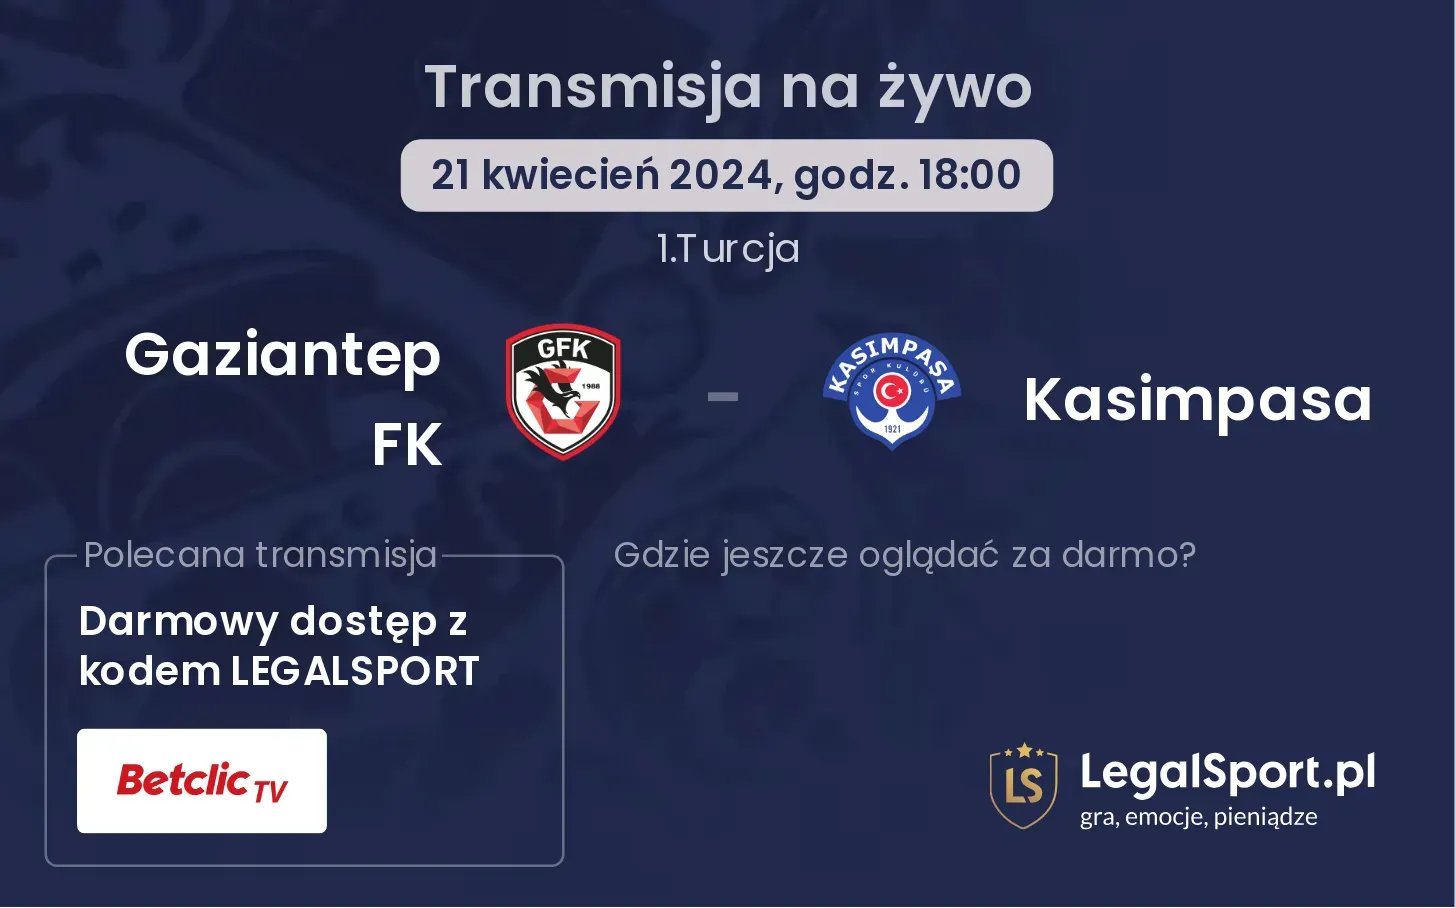 Gaziantep FK - Kasimpasa transmisja na żywo